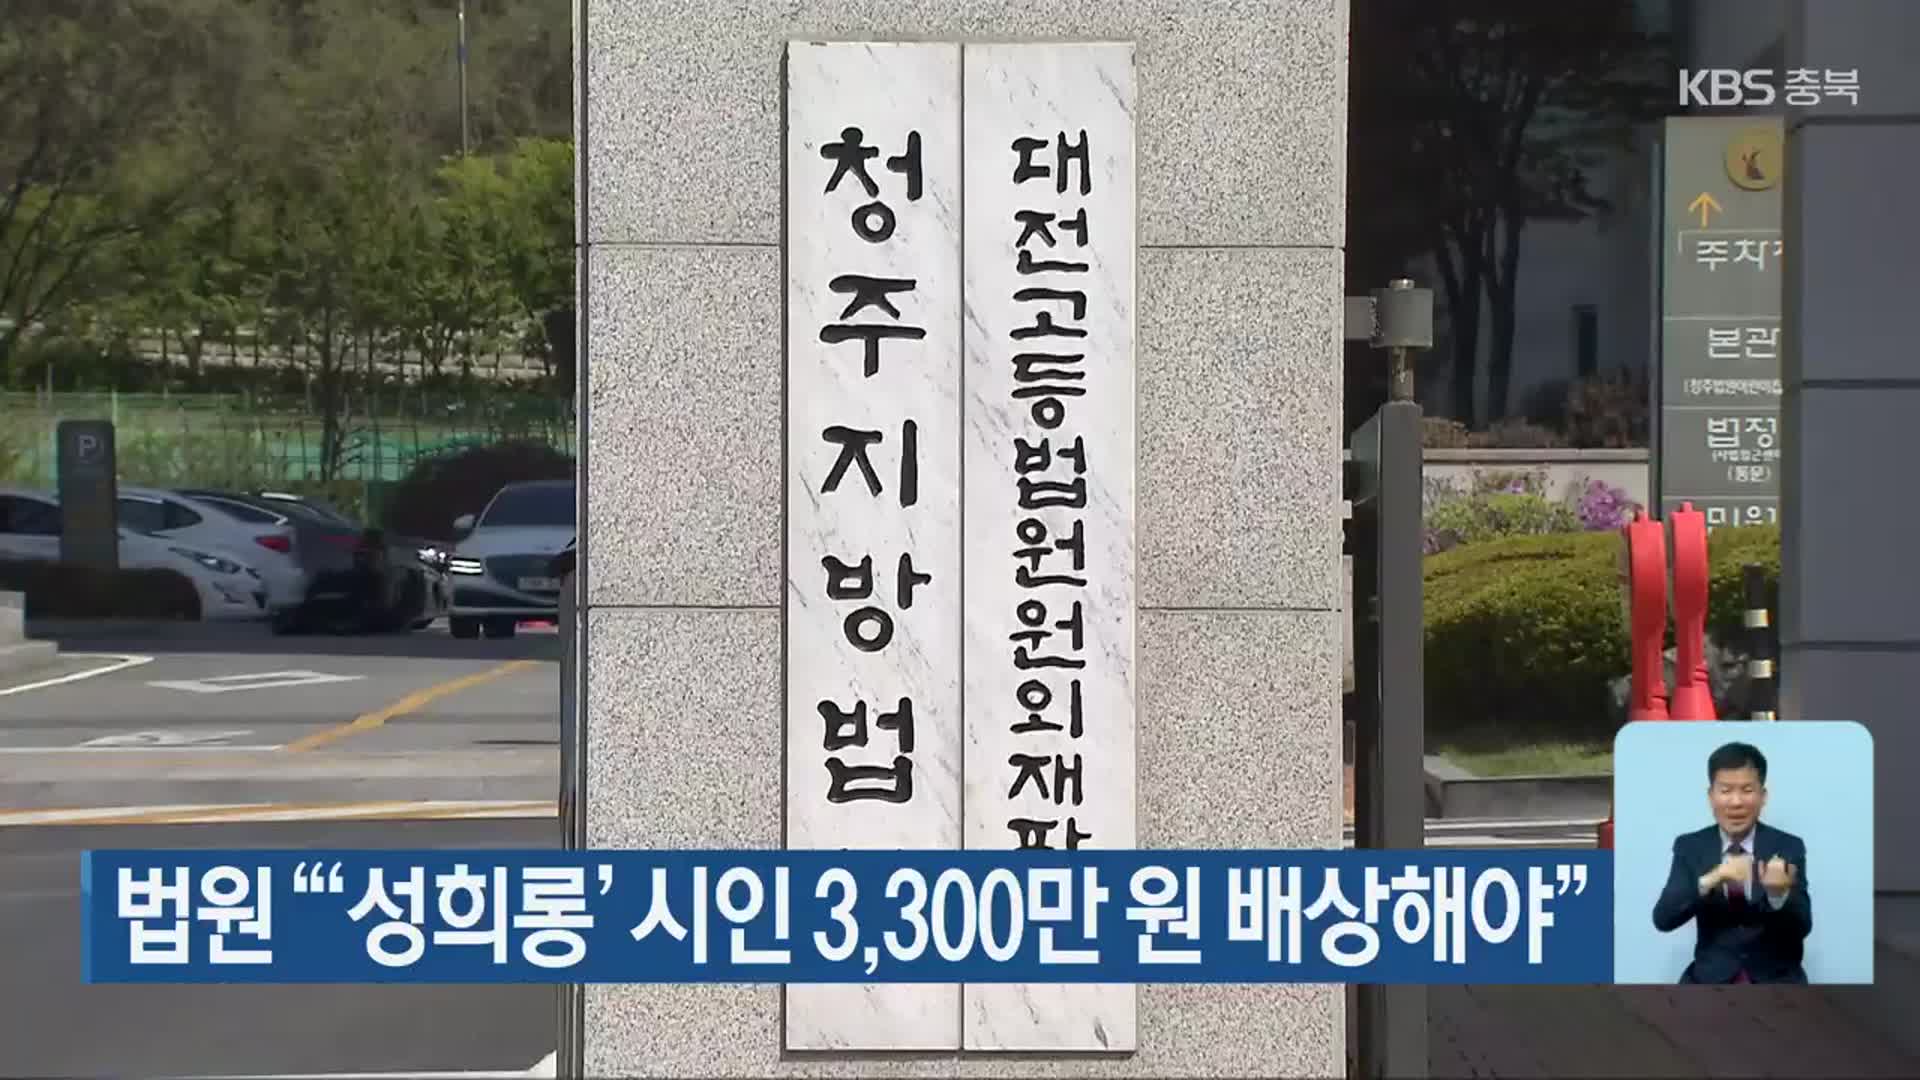 법원 “‘성희롱’ 시인 3,300만 원 배상해야”